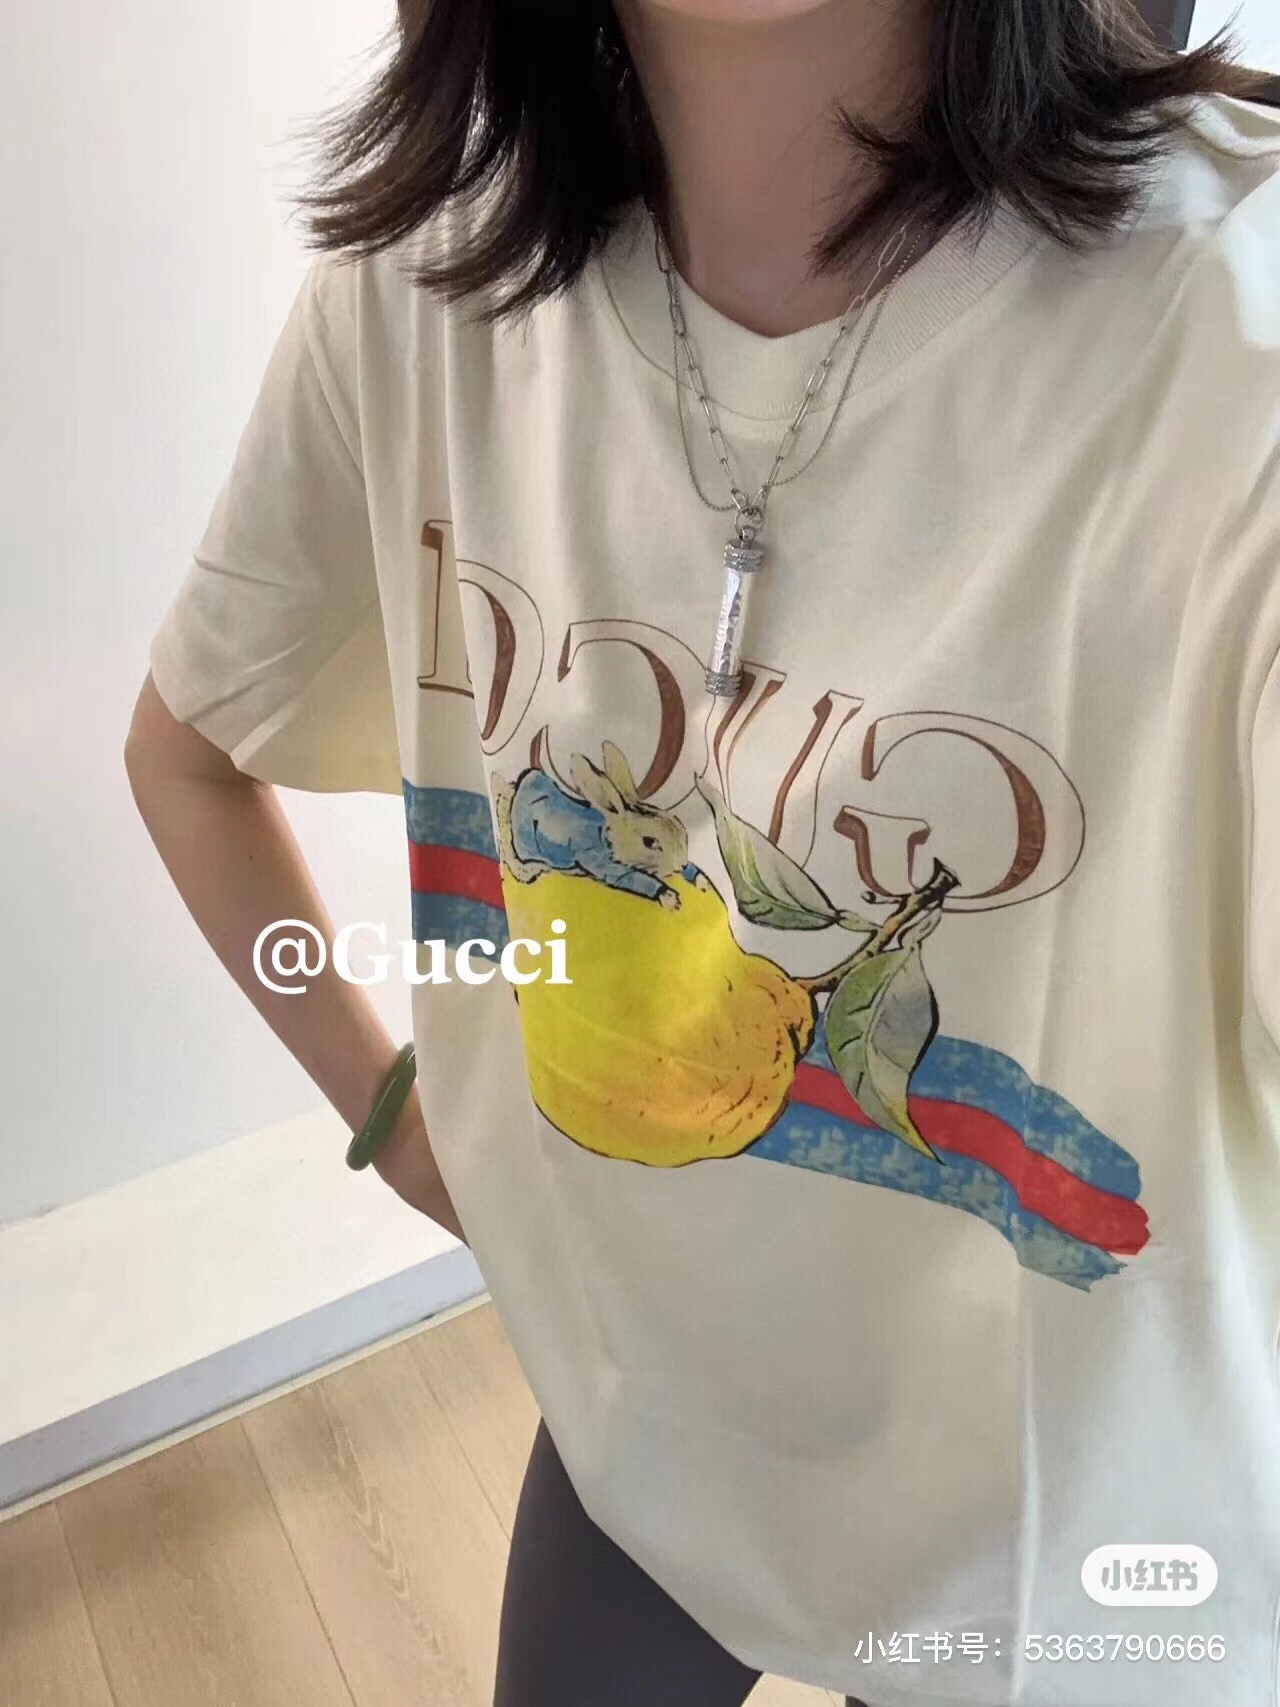 1: 1
 Gucci Kleidung T-Shirt Aprikosenfarbe Drucken Unisex Gekämmte Baumwolle Sommerkollektion Kurzarm